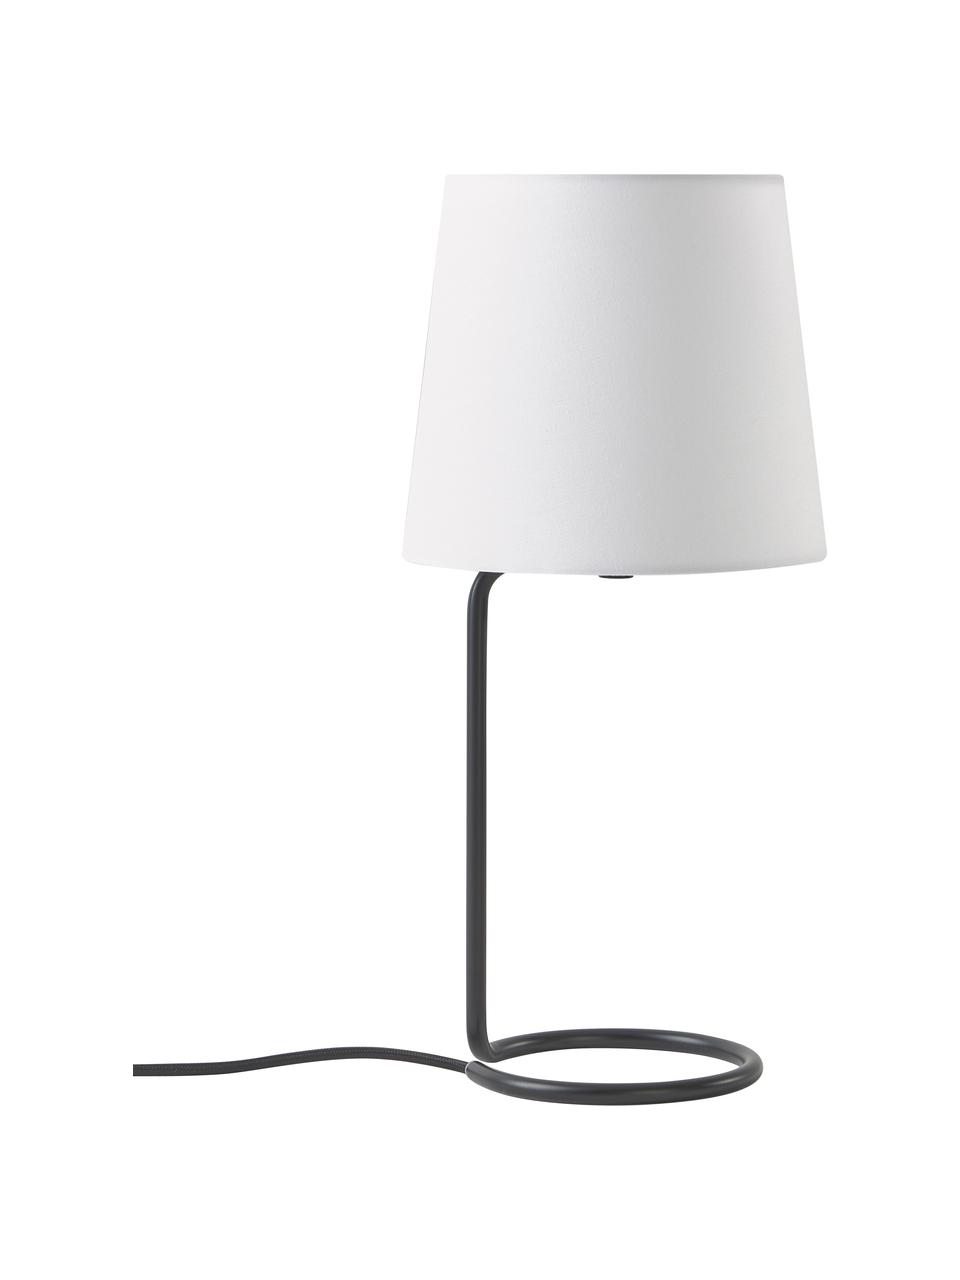 Tischlampe Cade in Schwarz, Lampenschirm: Textil, Lampenfuß: Metall, pulverbeschichtet, Weiß,Schwarz, Ø 19 cm x H 42 cm